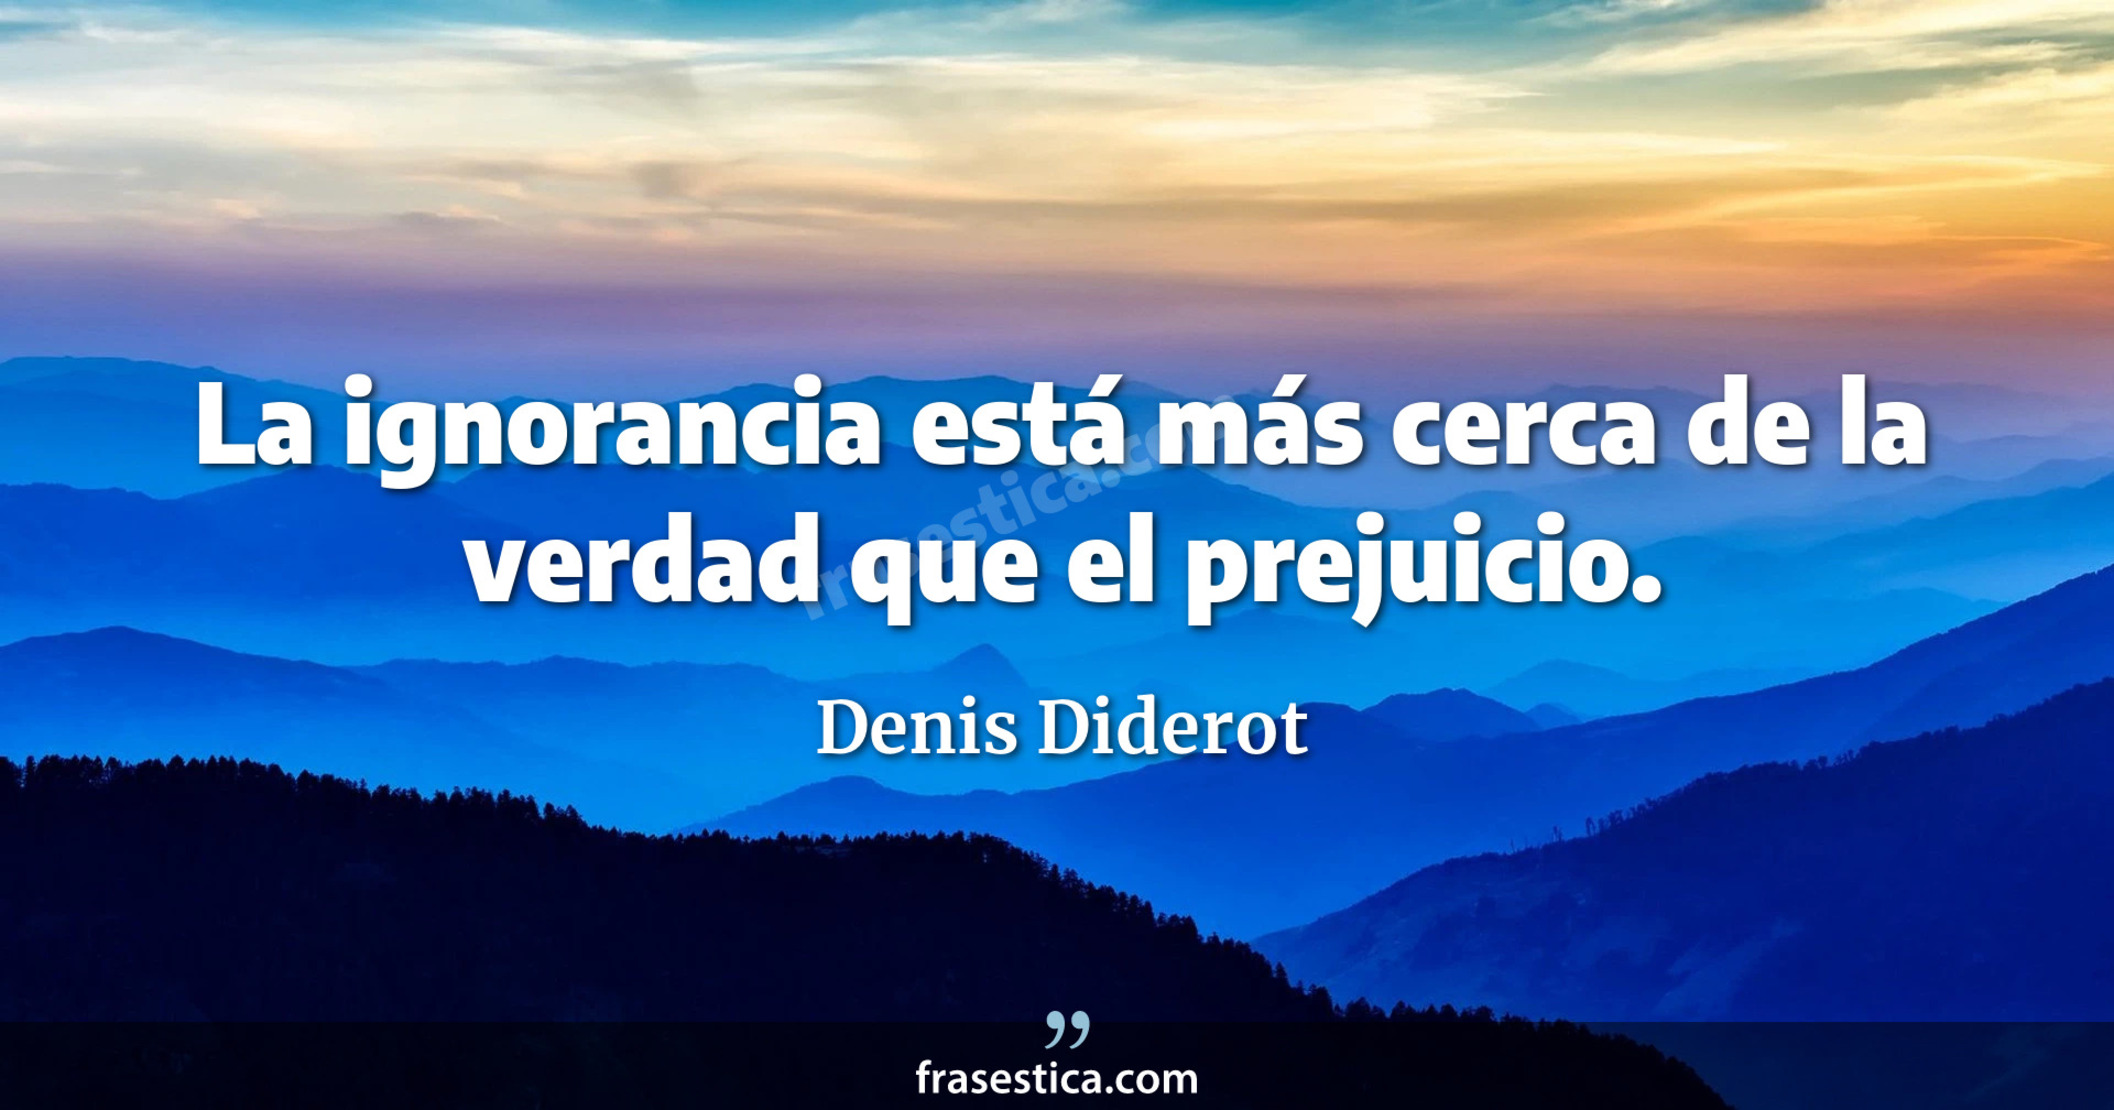 La ignorancia está más cerca de la verdad que el prejuicio. - Denis Diderot